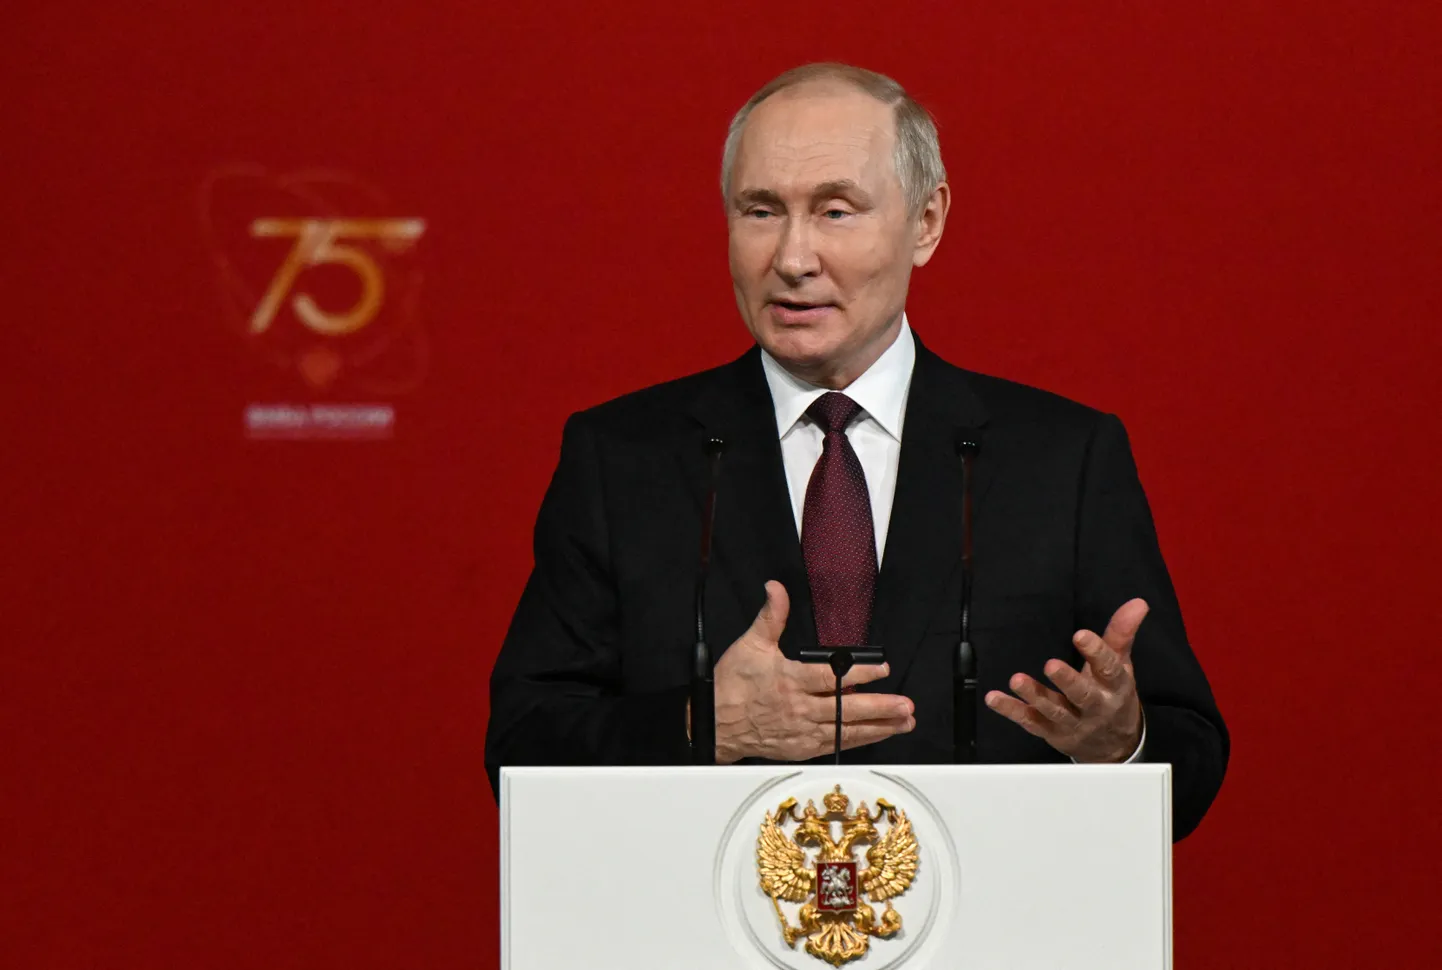 Venemaa president Vladimir Putin pidamas 9. novembril 2022 Moskvas kõnet riikliku meditsiini-bioloogia agentuuri 75. aastapäeval